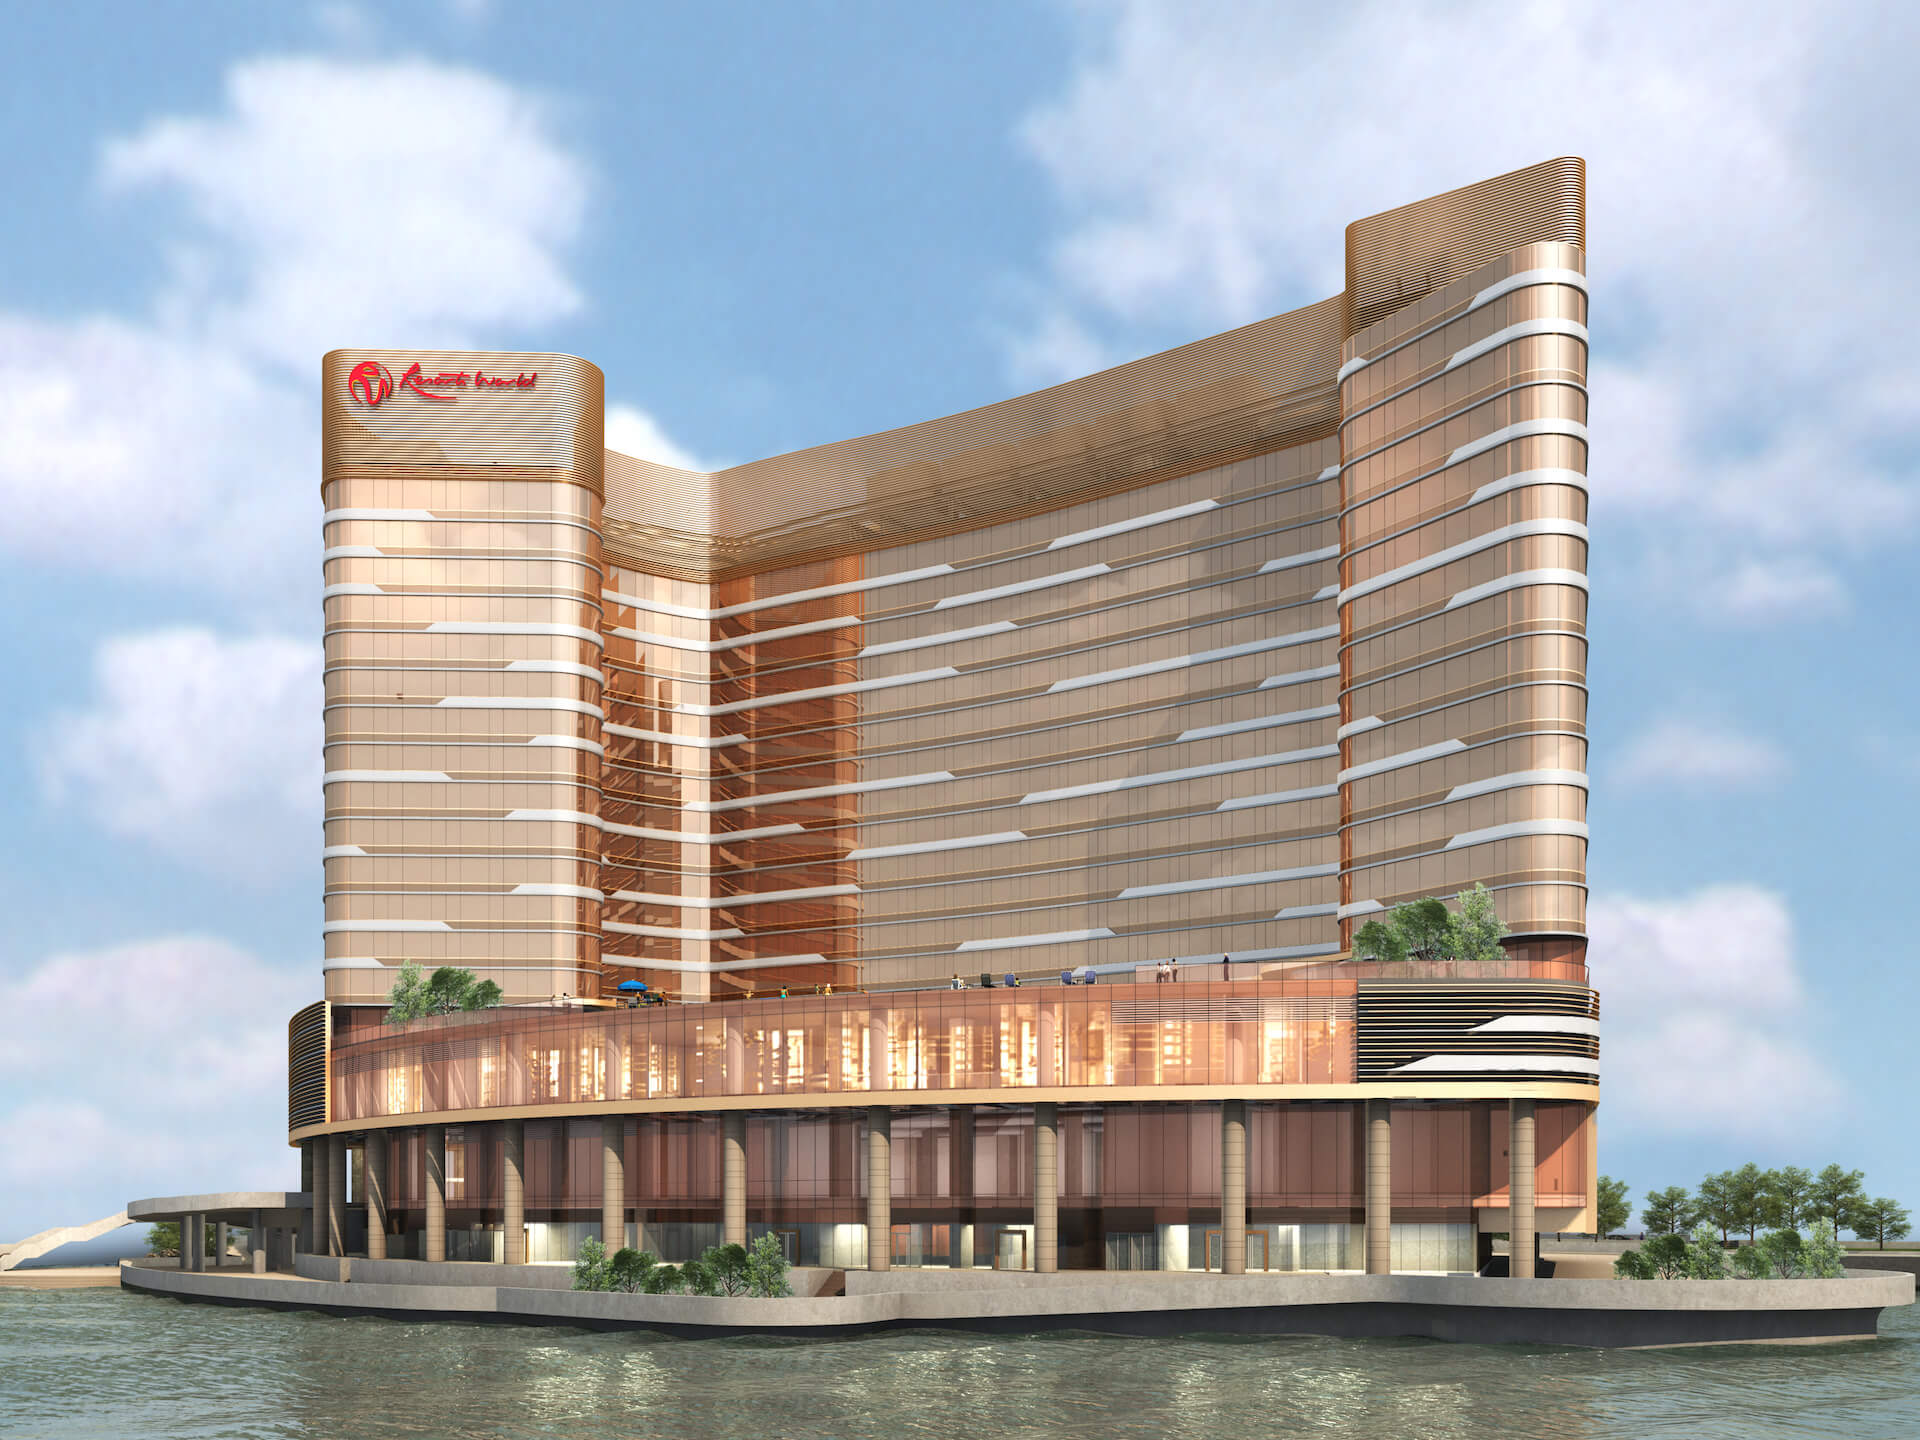 Resorts World, Hotel Development at 1 Lago Nam Van, Macau